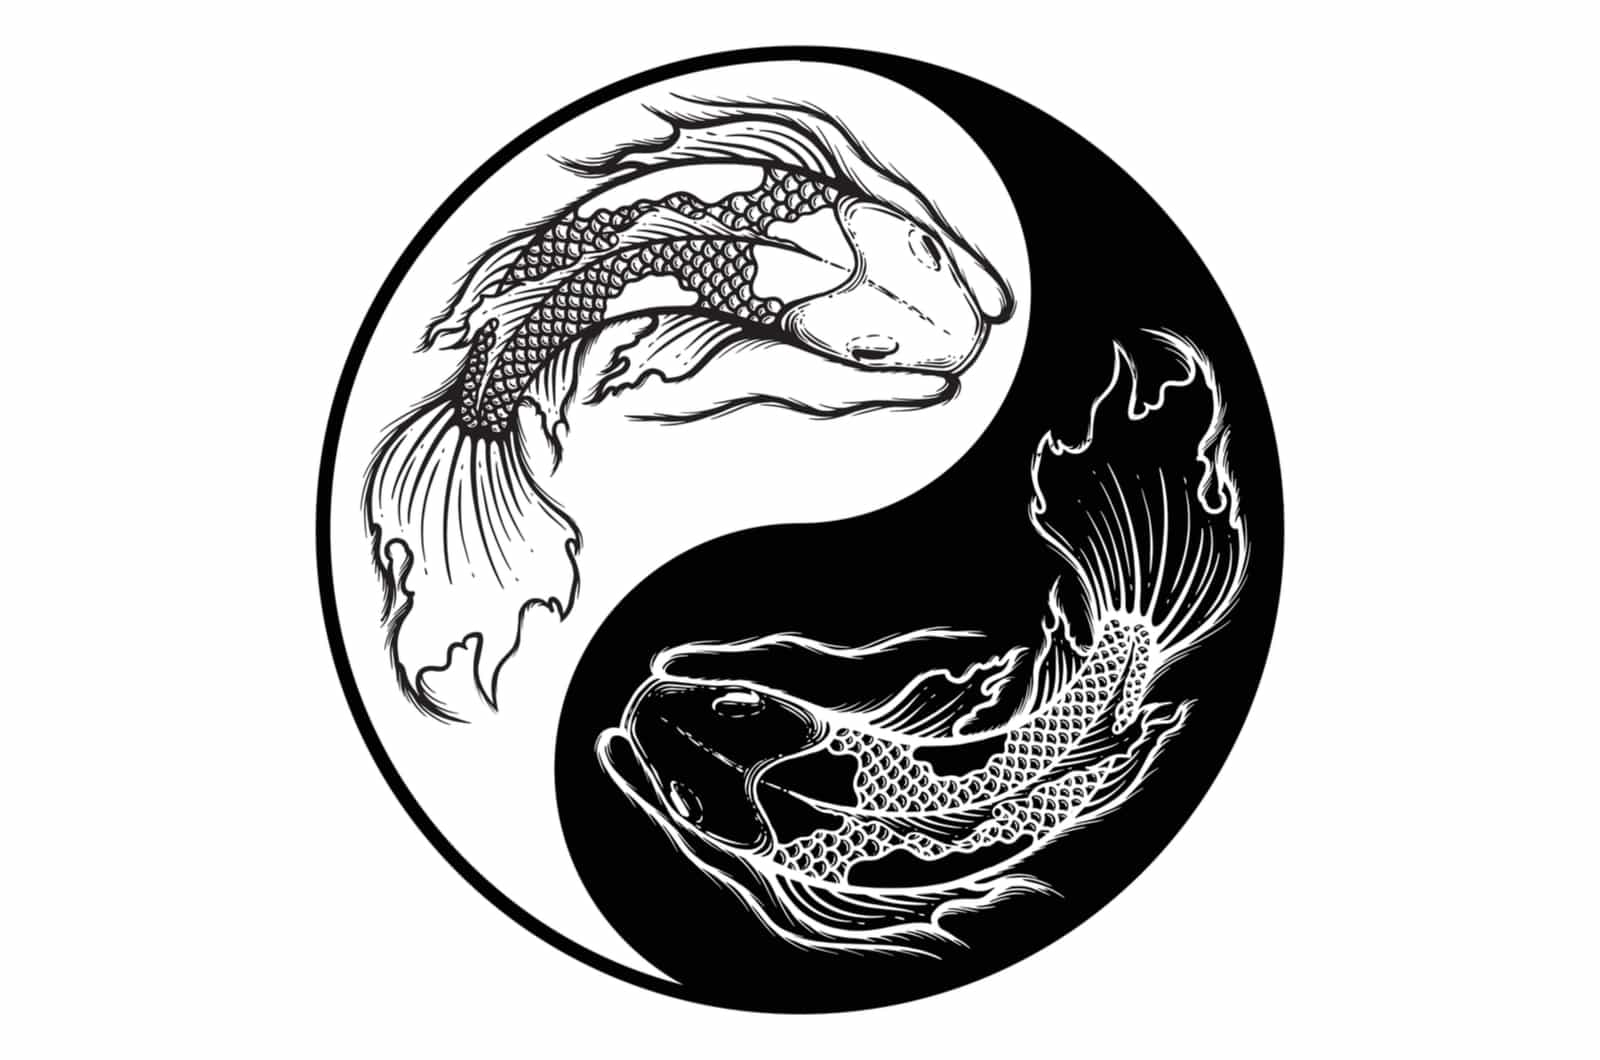 Ying yang poisson koi symbole d'harmonie et d'équilibre